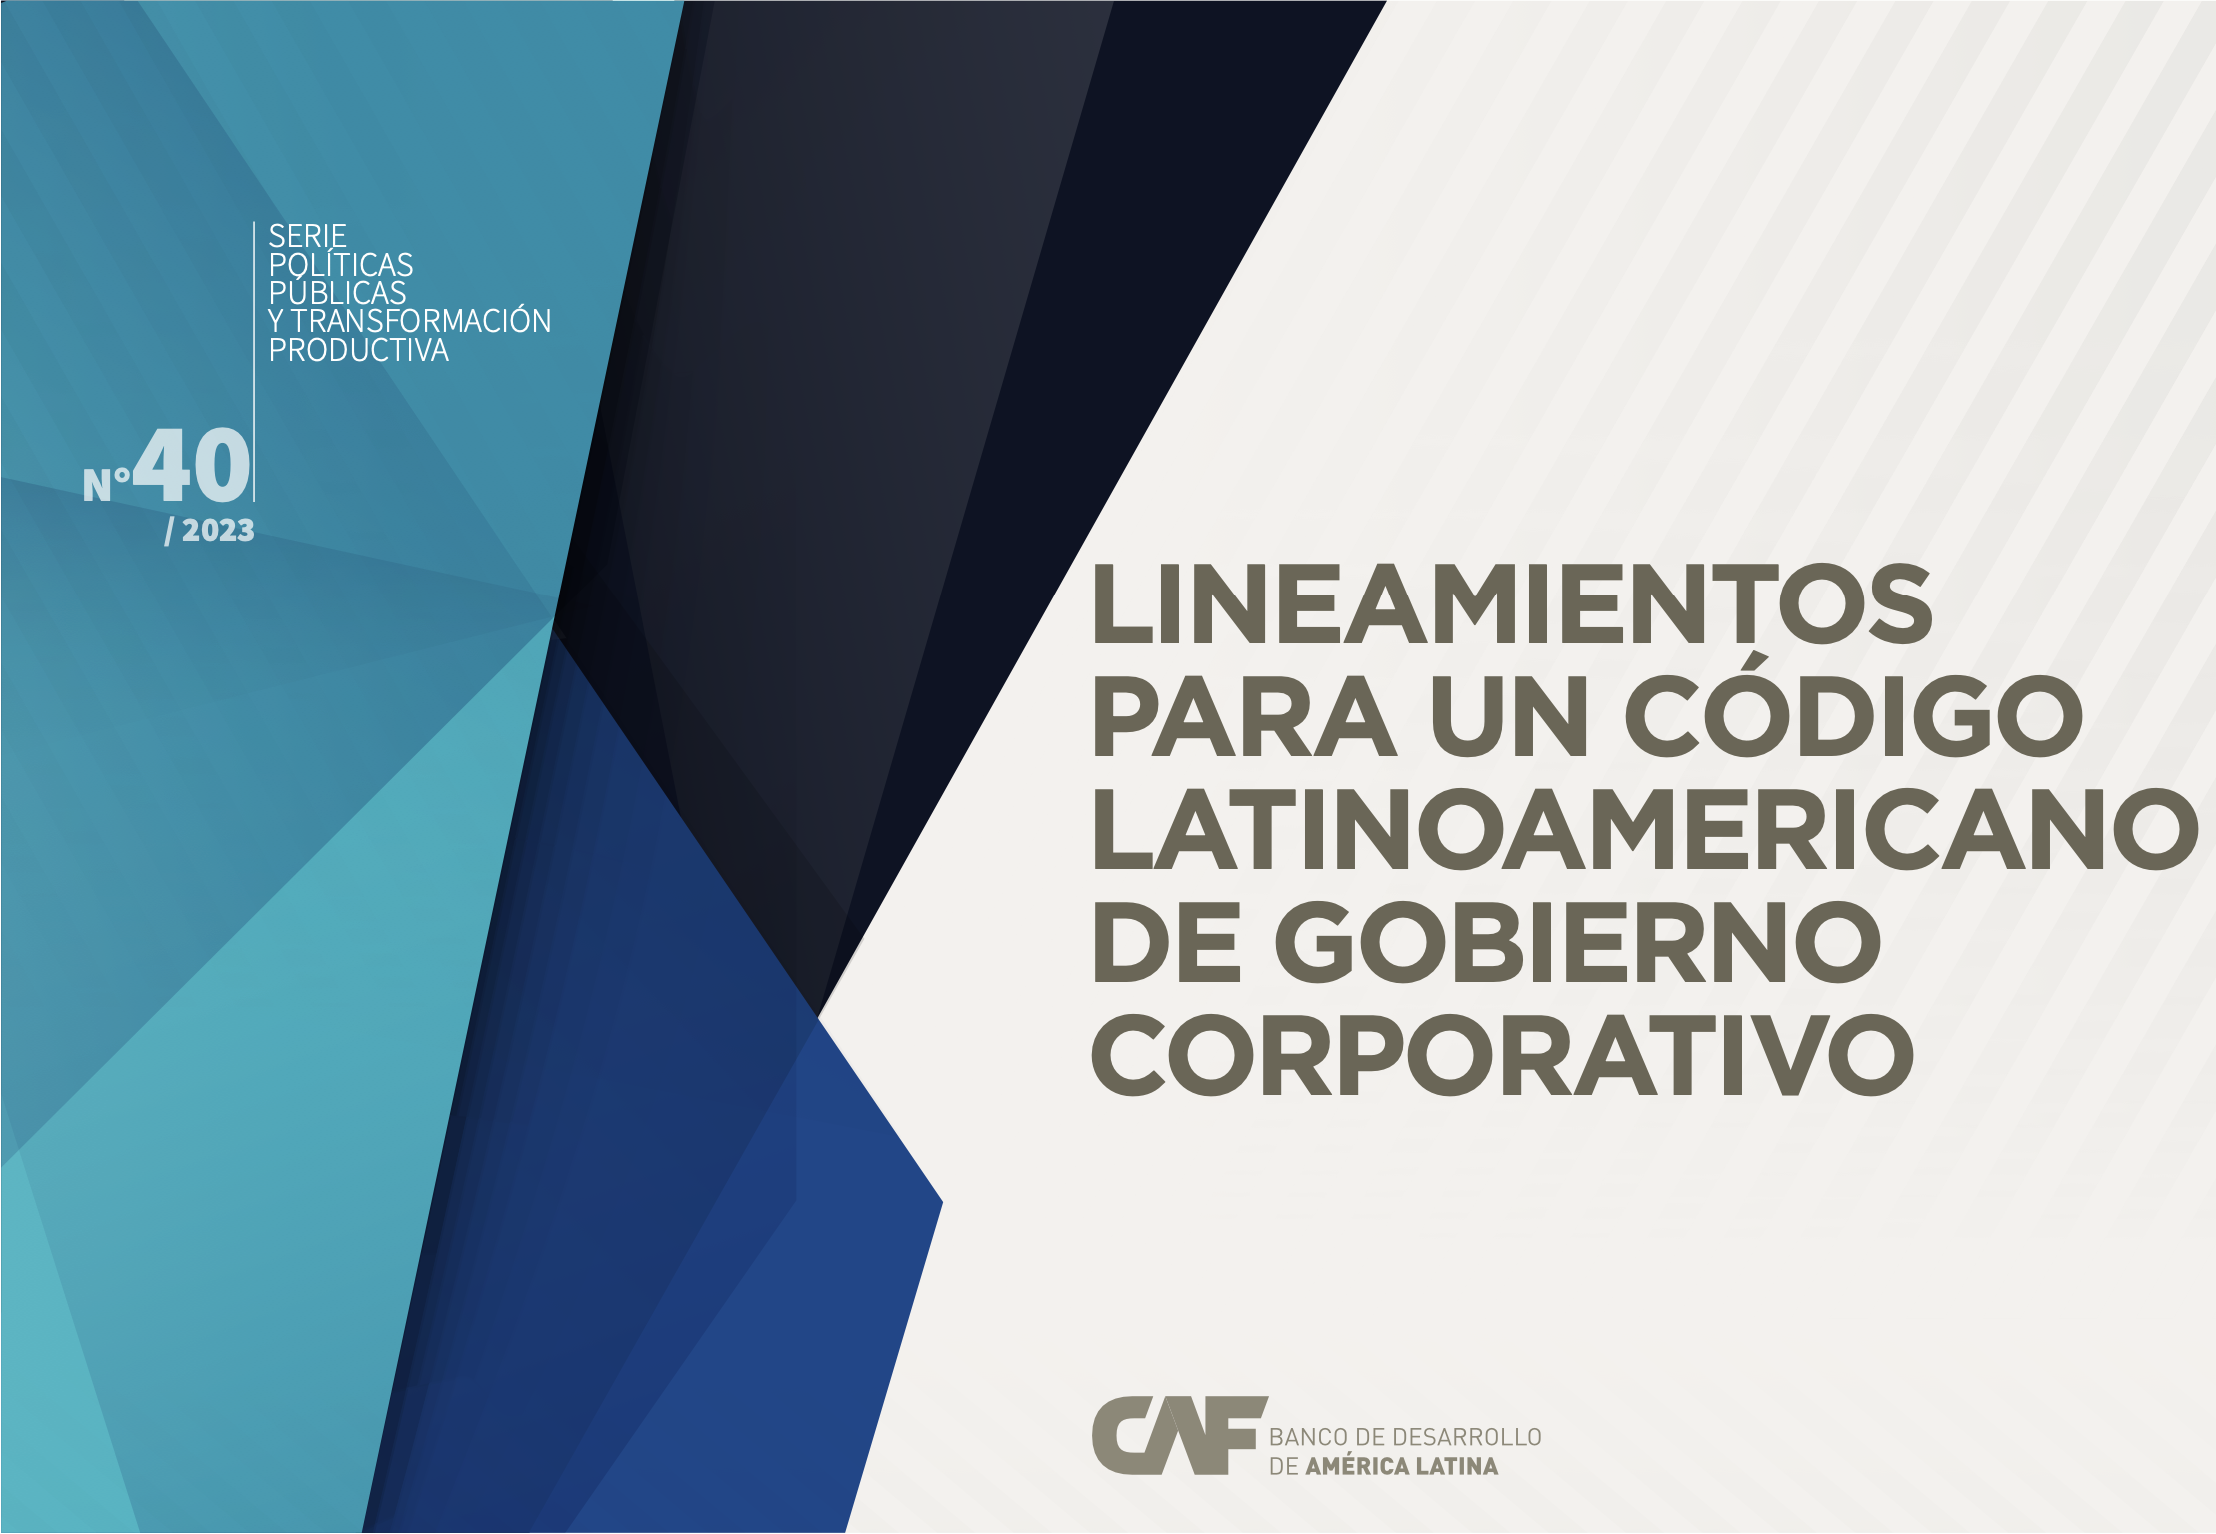 Lineamentos para un código Latinoamericano de gobierno corporativo